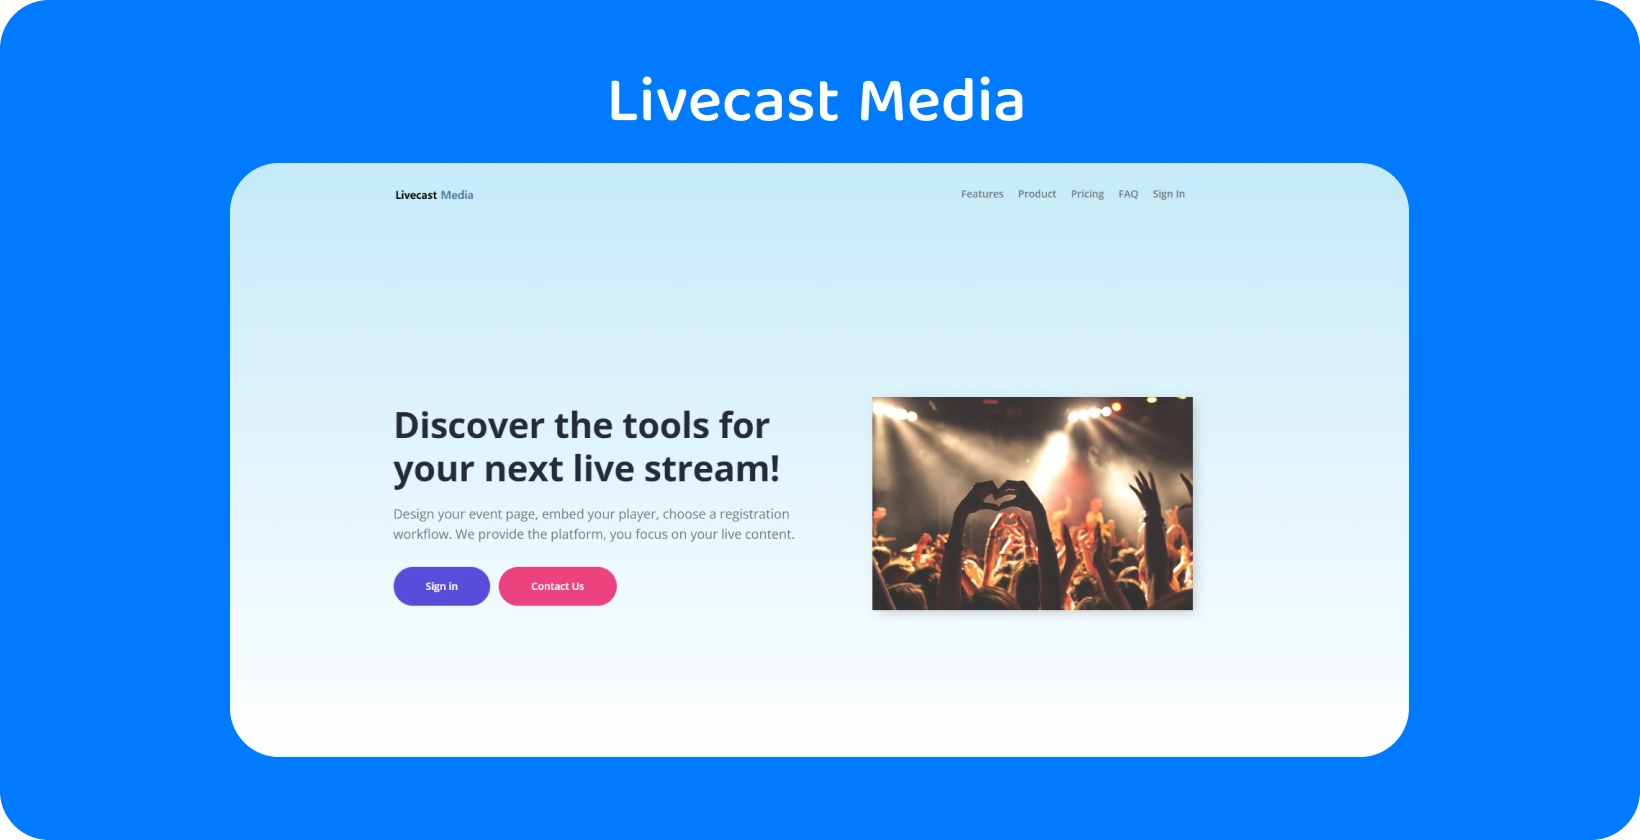 लाइवकास्ट मीडिया के स्ट्रीमिंग टूल का उपयोग करके दर्शकों से जुड़ें, जो यादगार लाइव इवेंट बनाने के लिए आदर्श है।